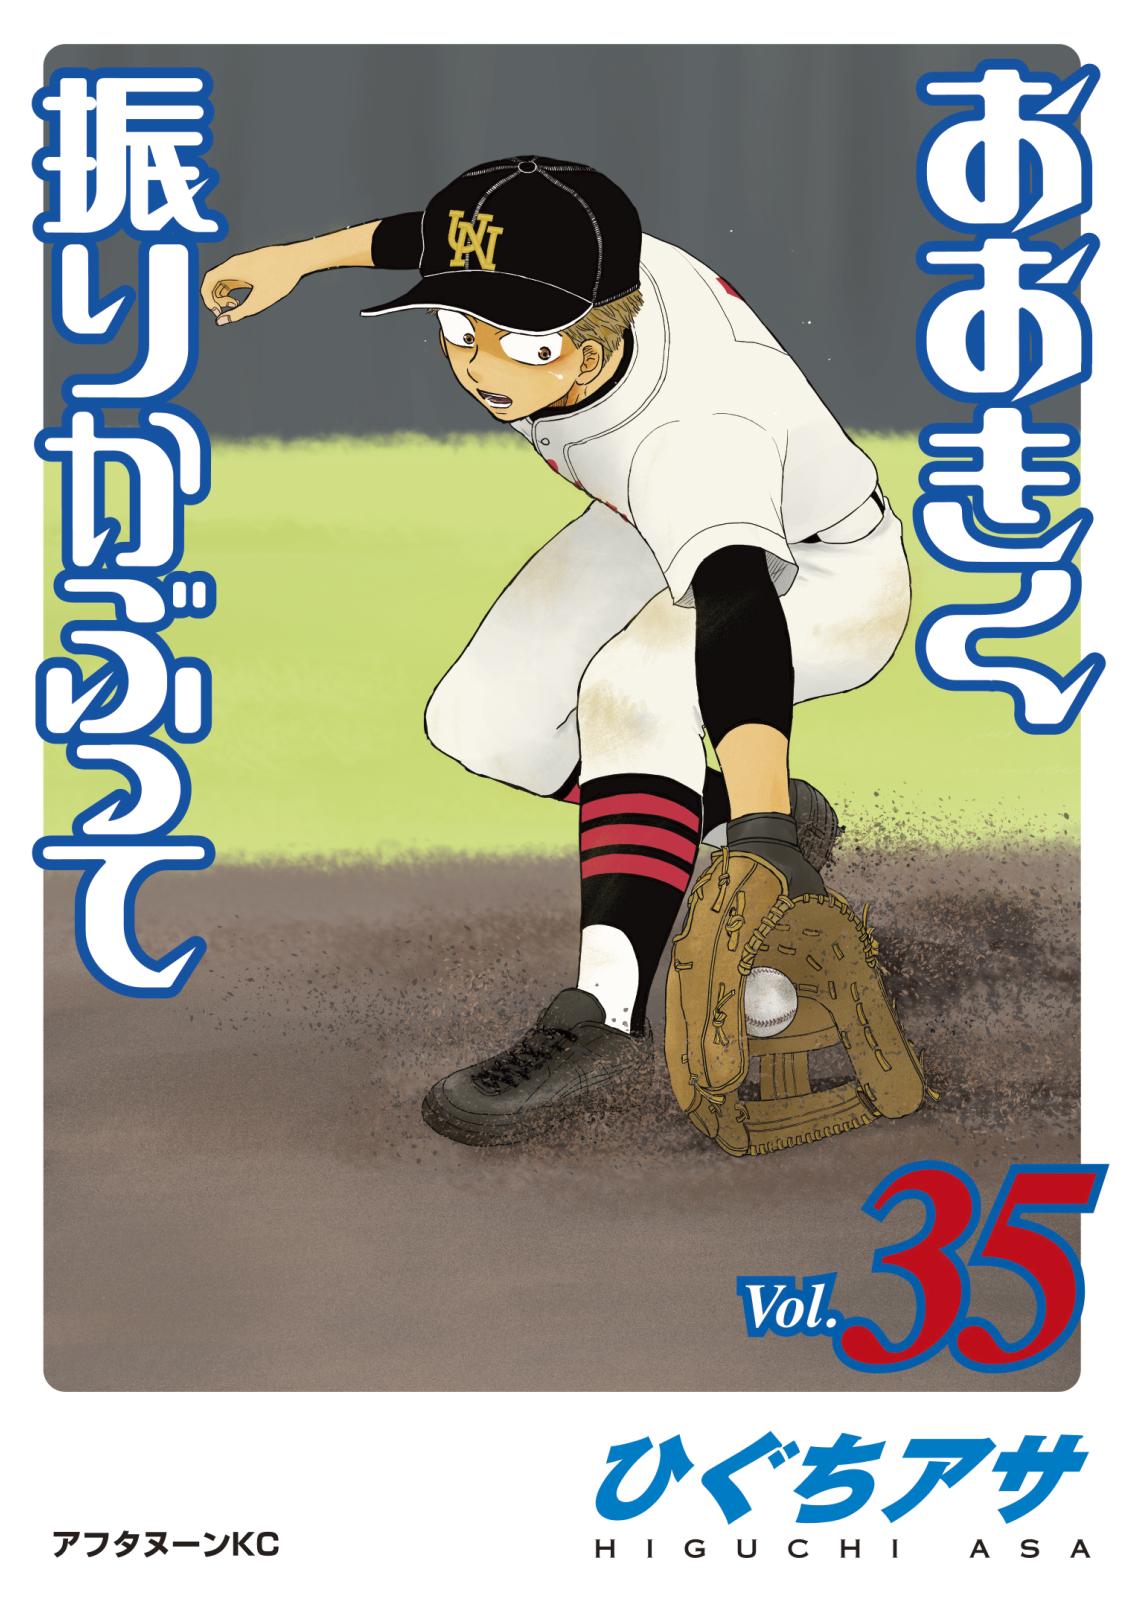 甲子園100週年 高校野球をテーマにした本当に面白い漫画3選 Music Jpニュース